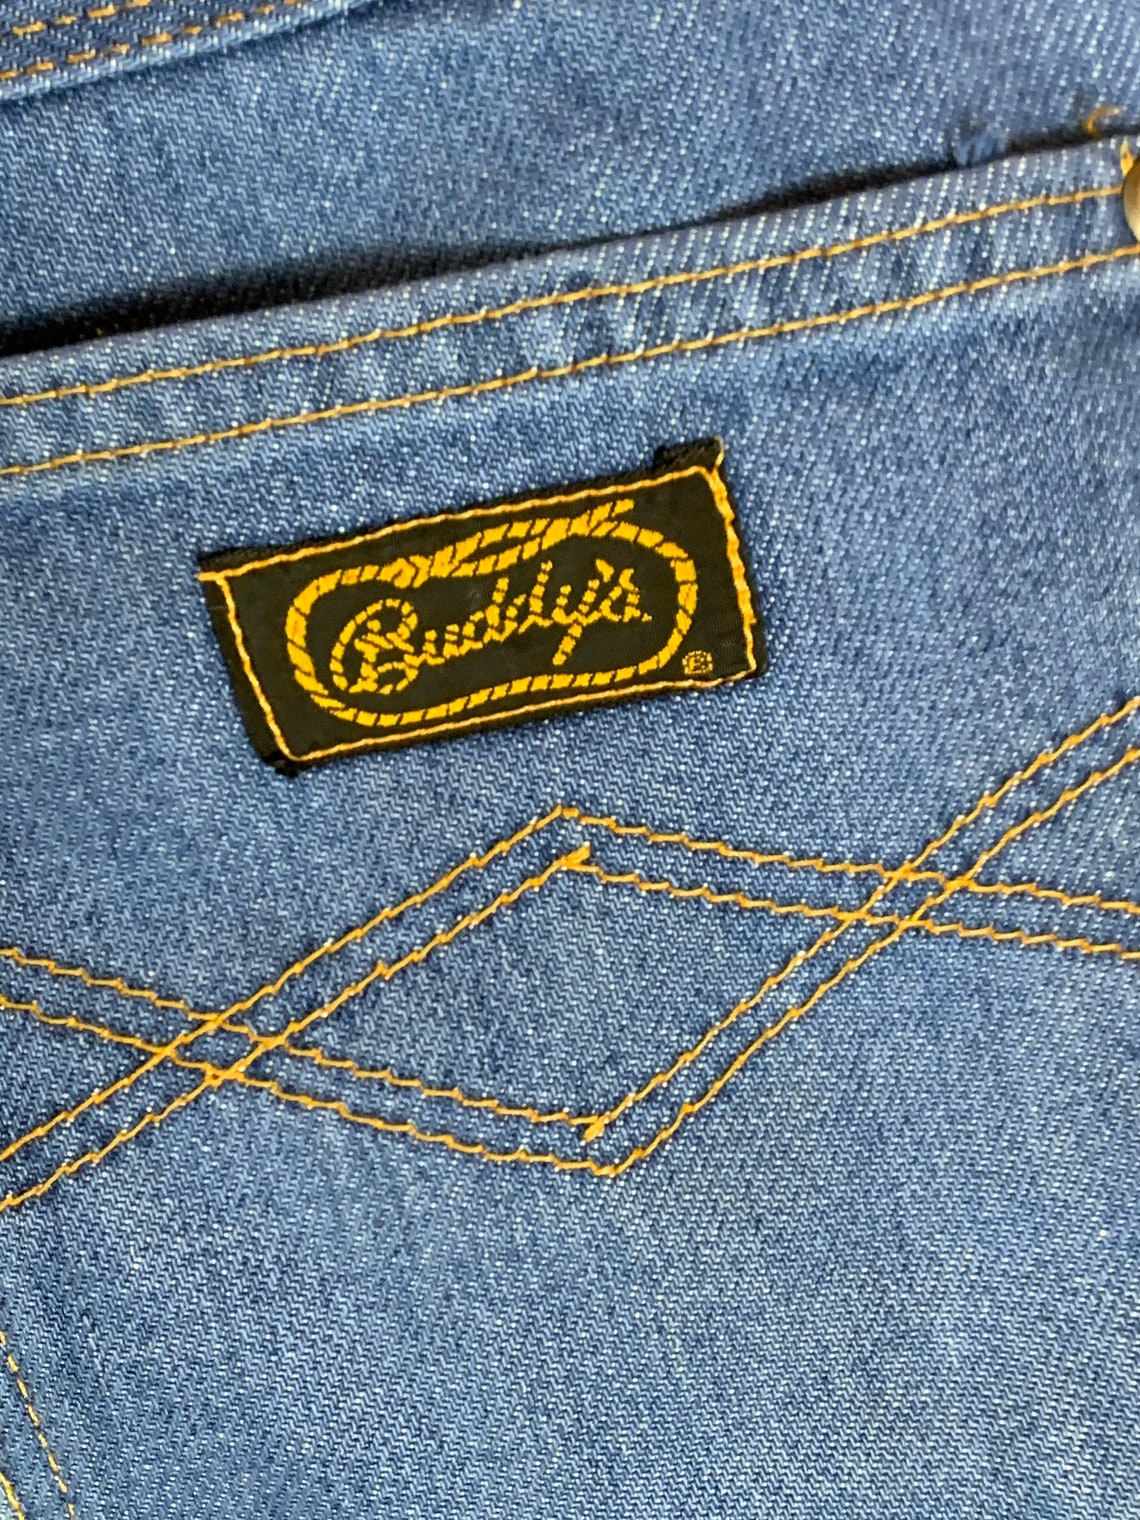 Vintage Buddys denim jeans 36 x 30 | Etsy